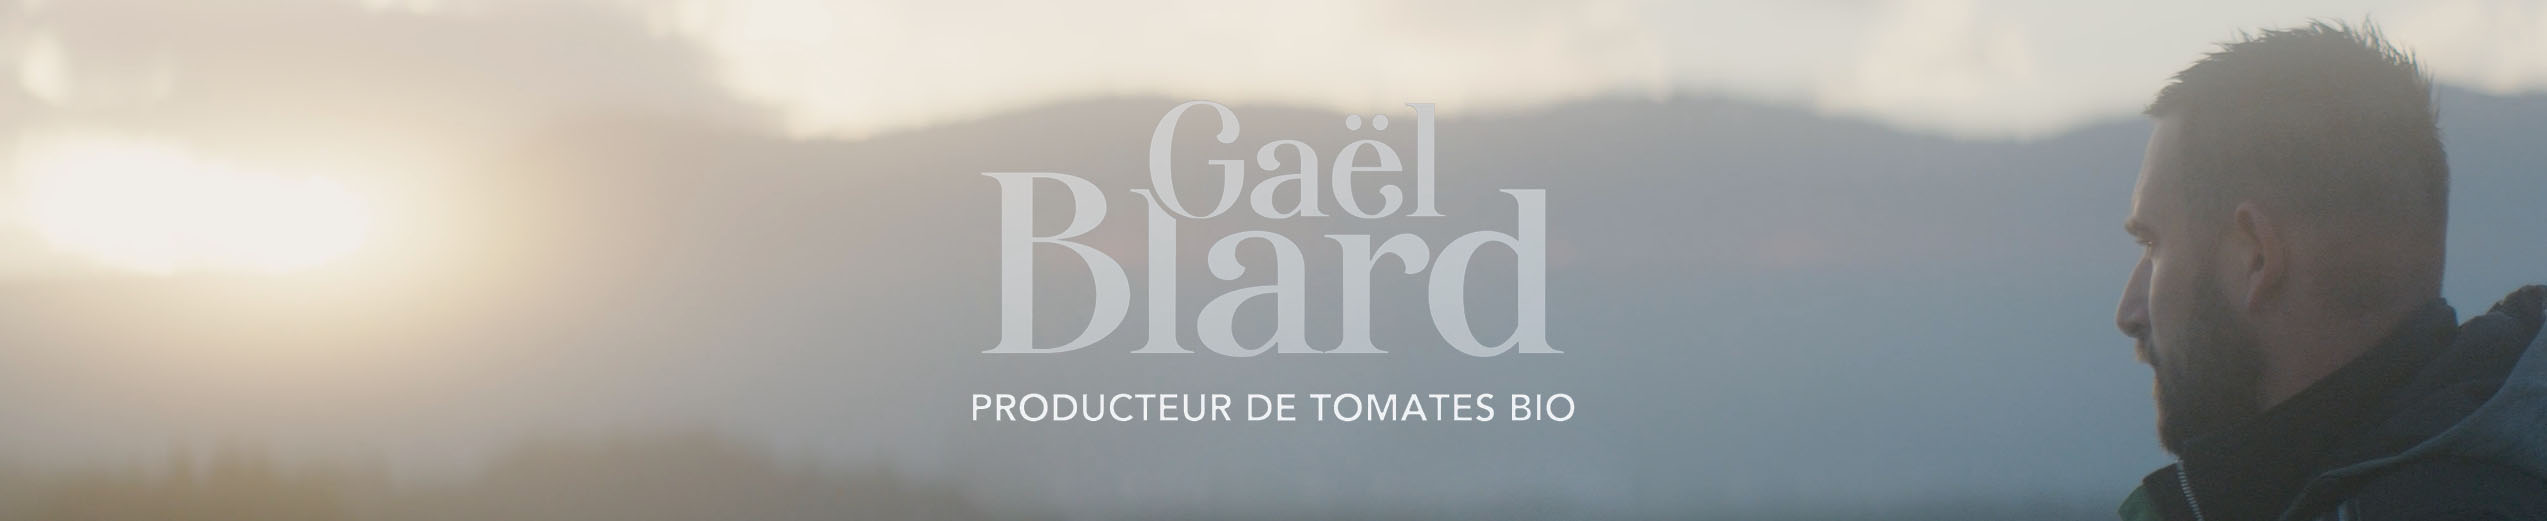 Basilic & Co_Gaël